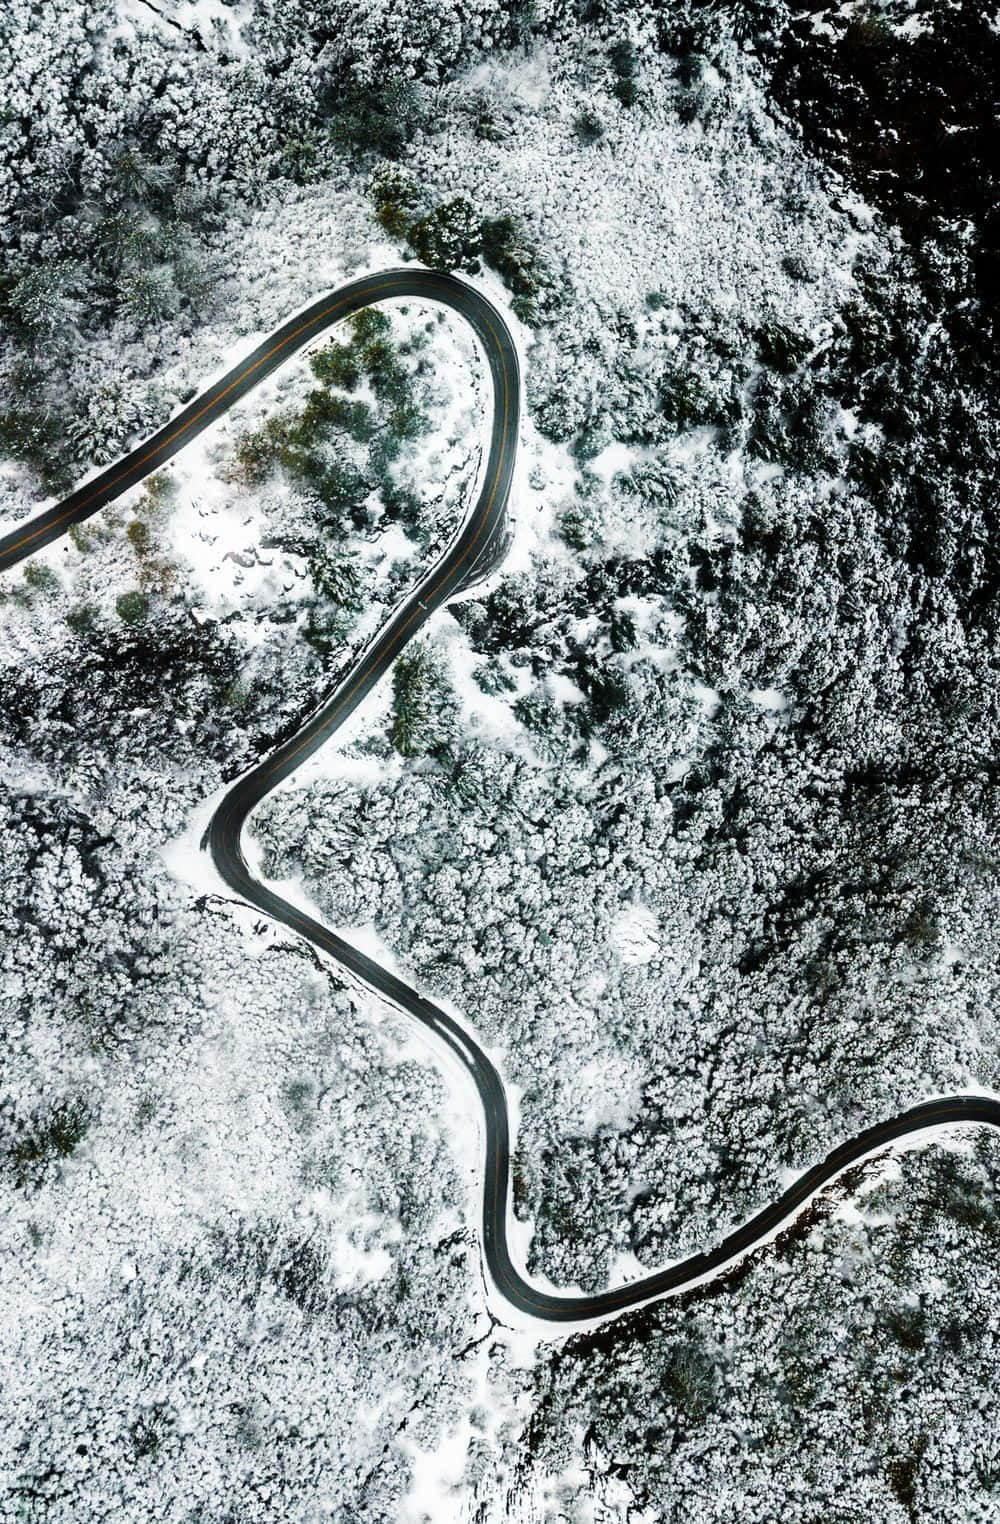 Snowy Road Aerial View Original Iphone 5s Wallpaper